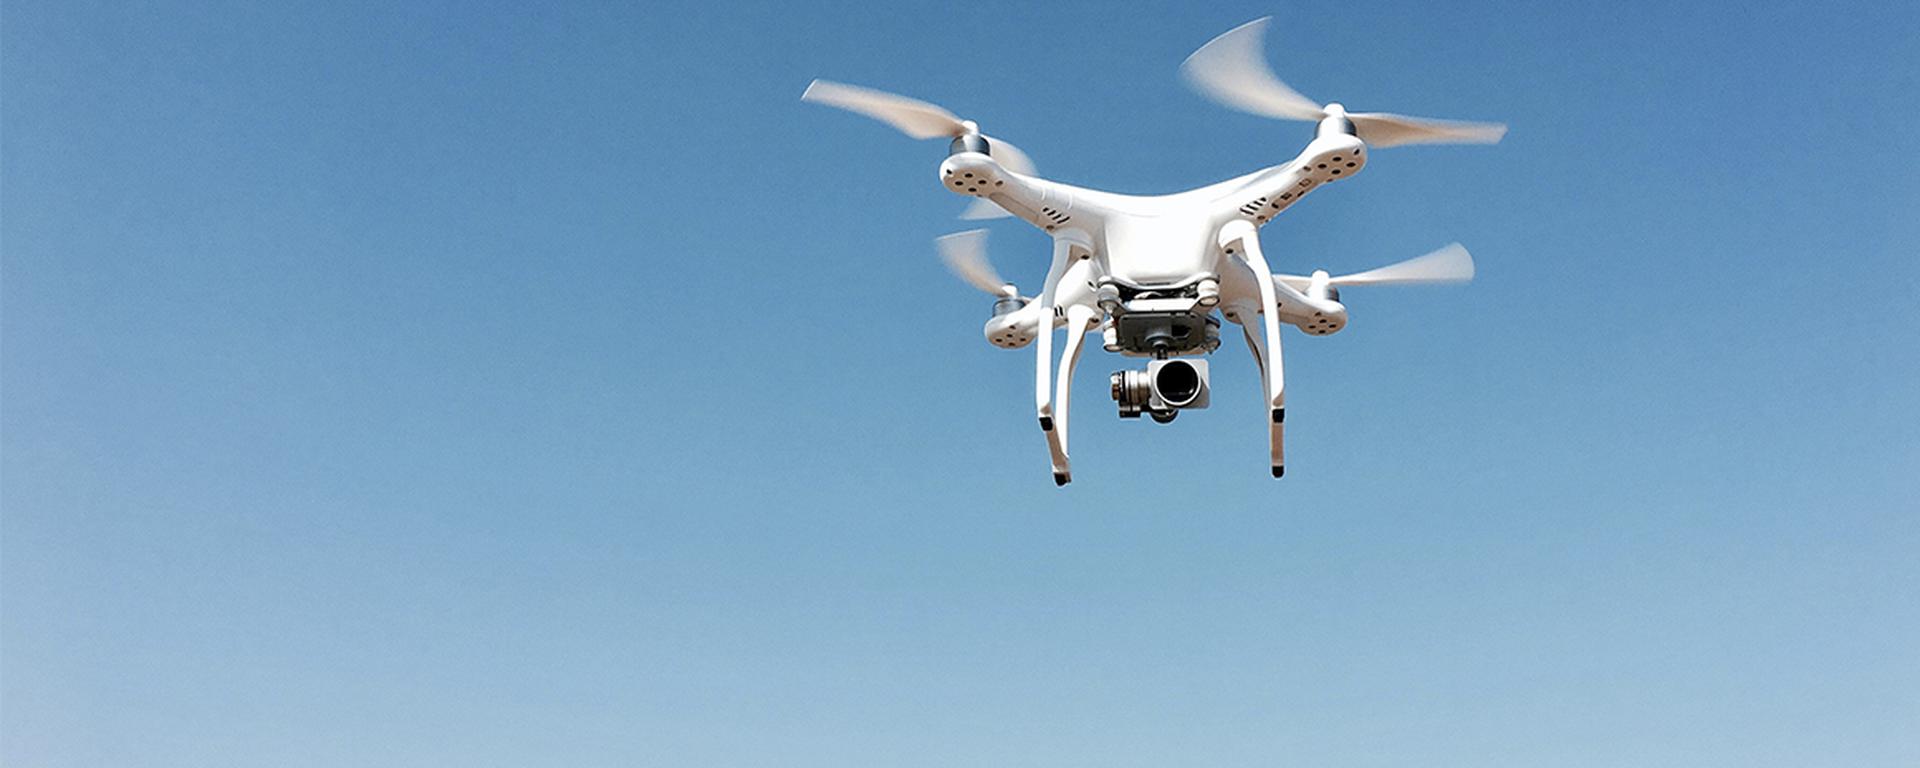 Desde juegos para niños hasta misiones militares: los diferentes usos para un dron